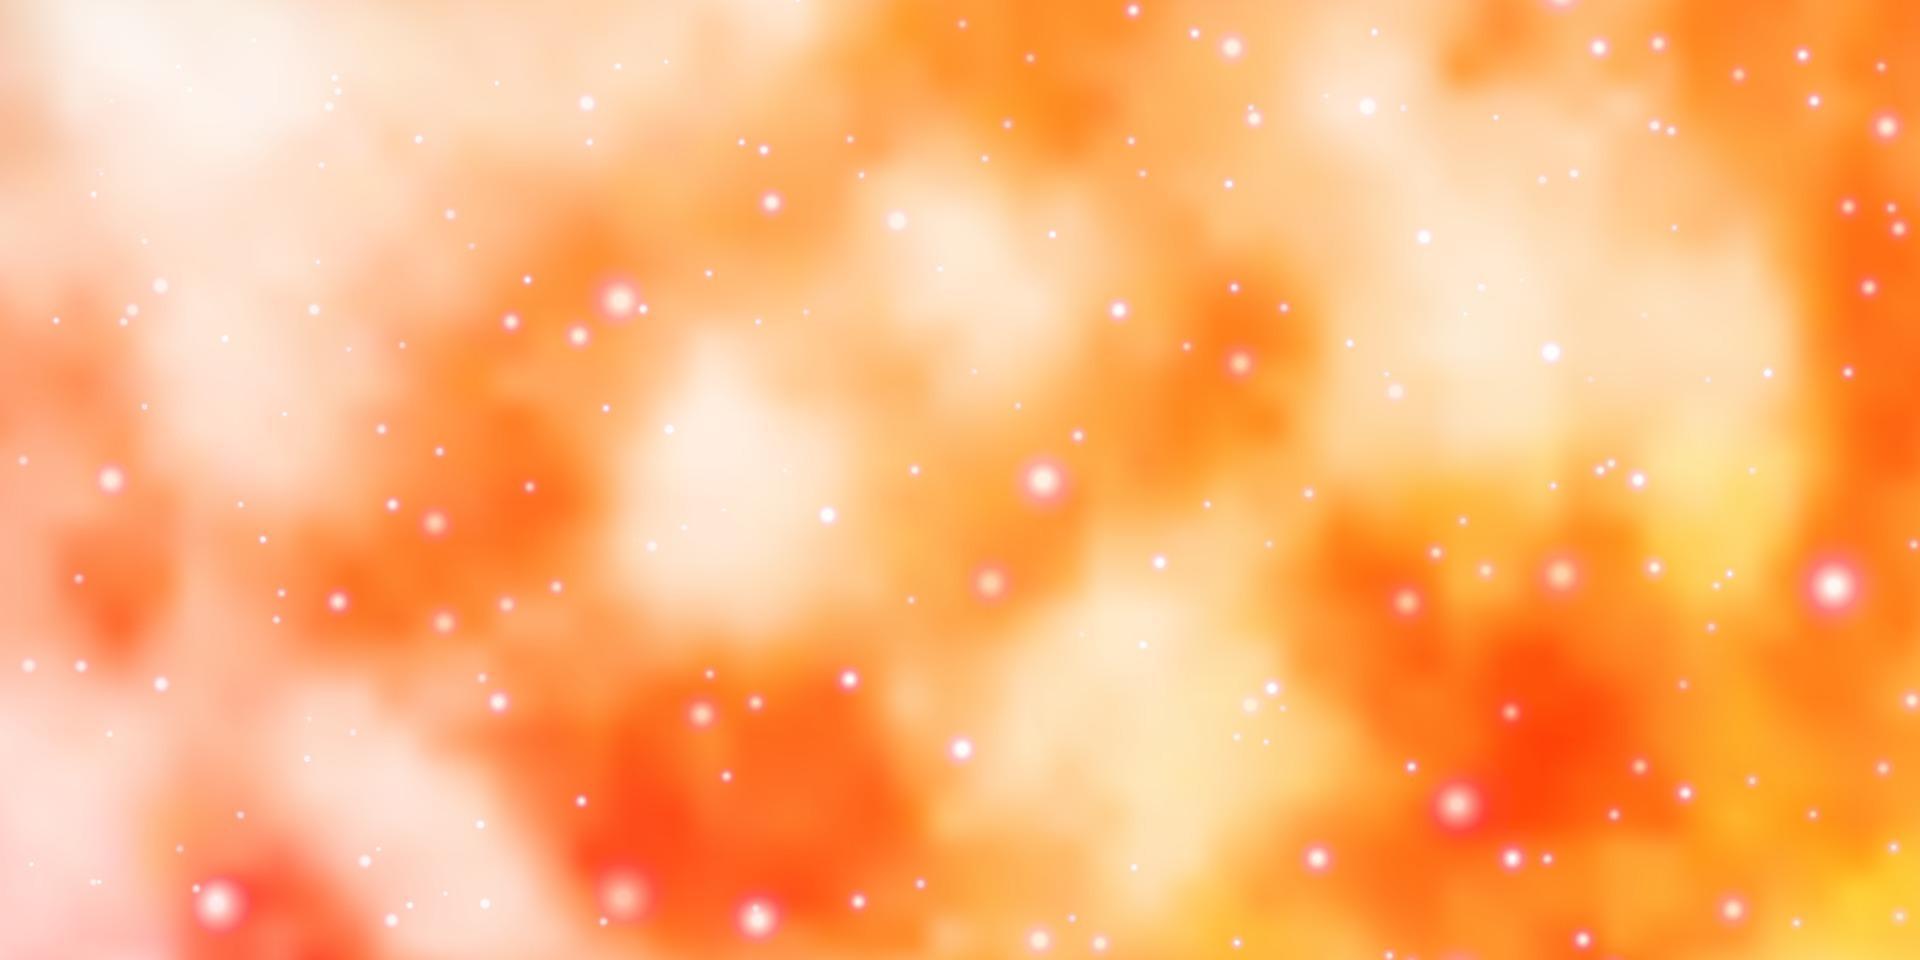 Fondo de vector naranja claro con estrellas pequeñas y grandes.